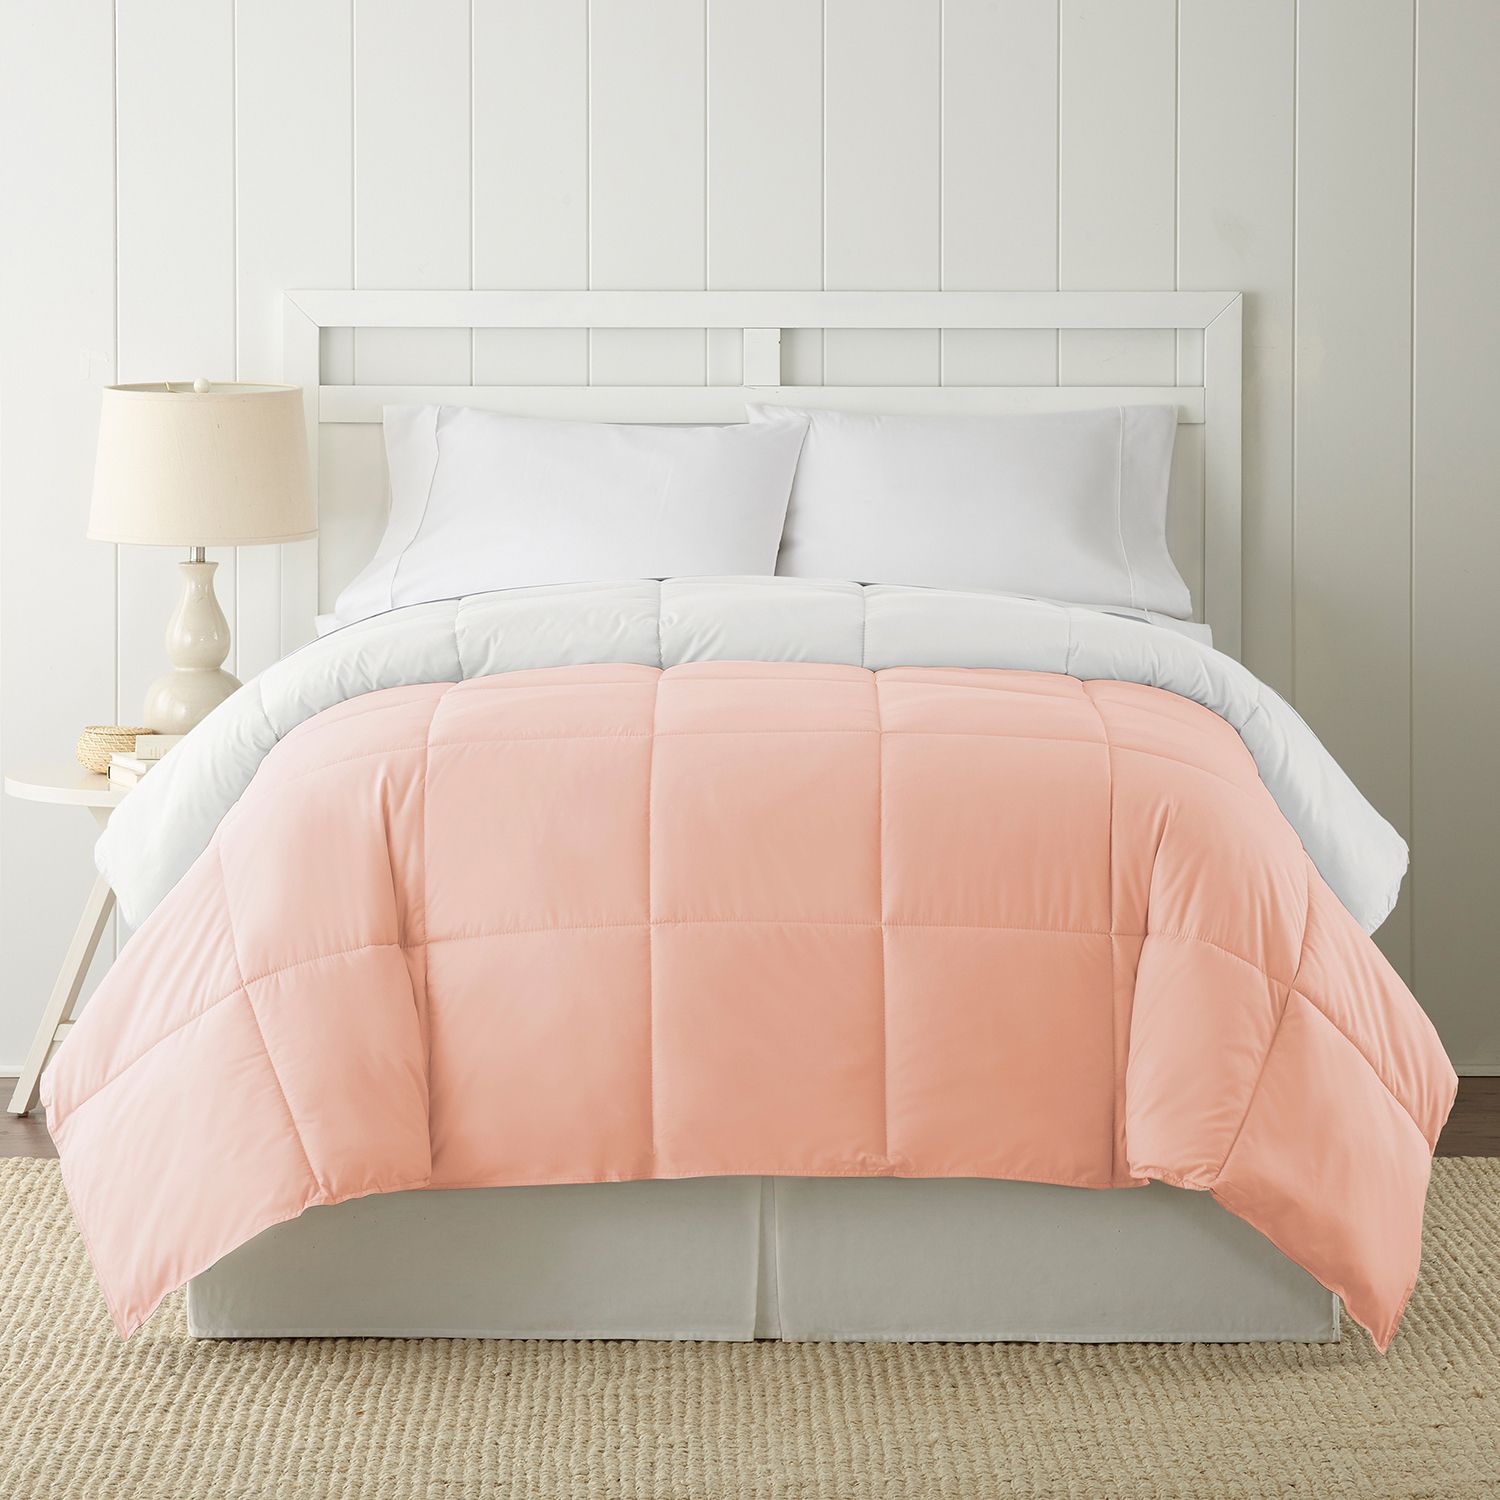 pink comforter baby